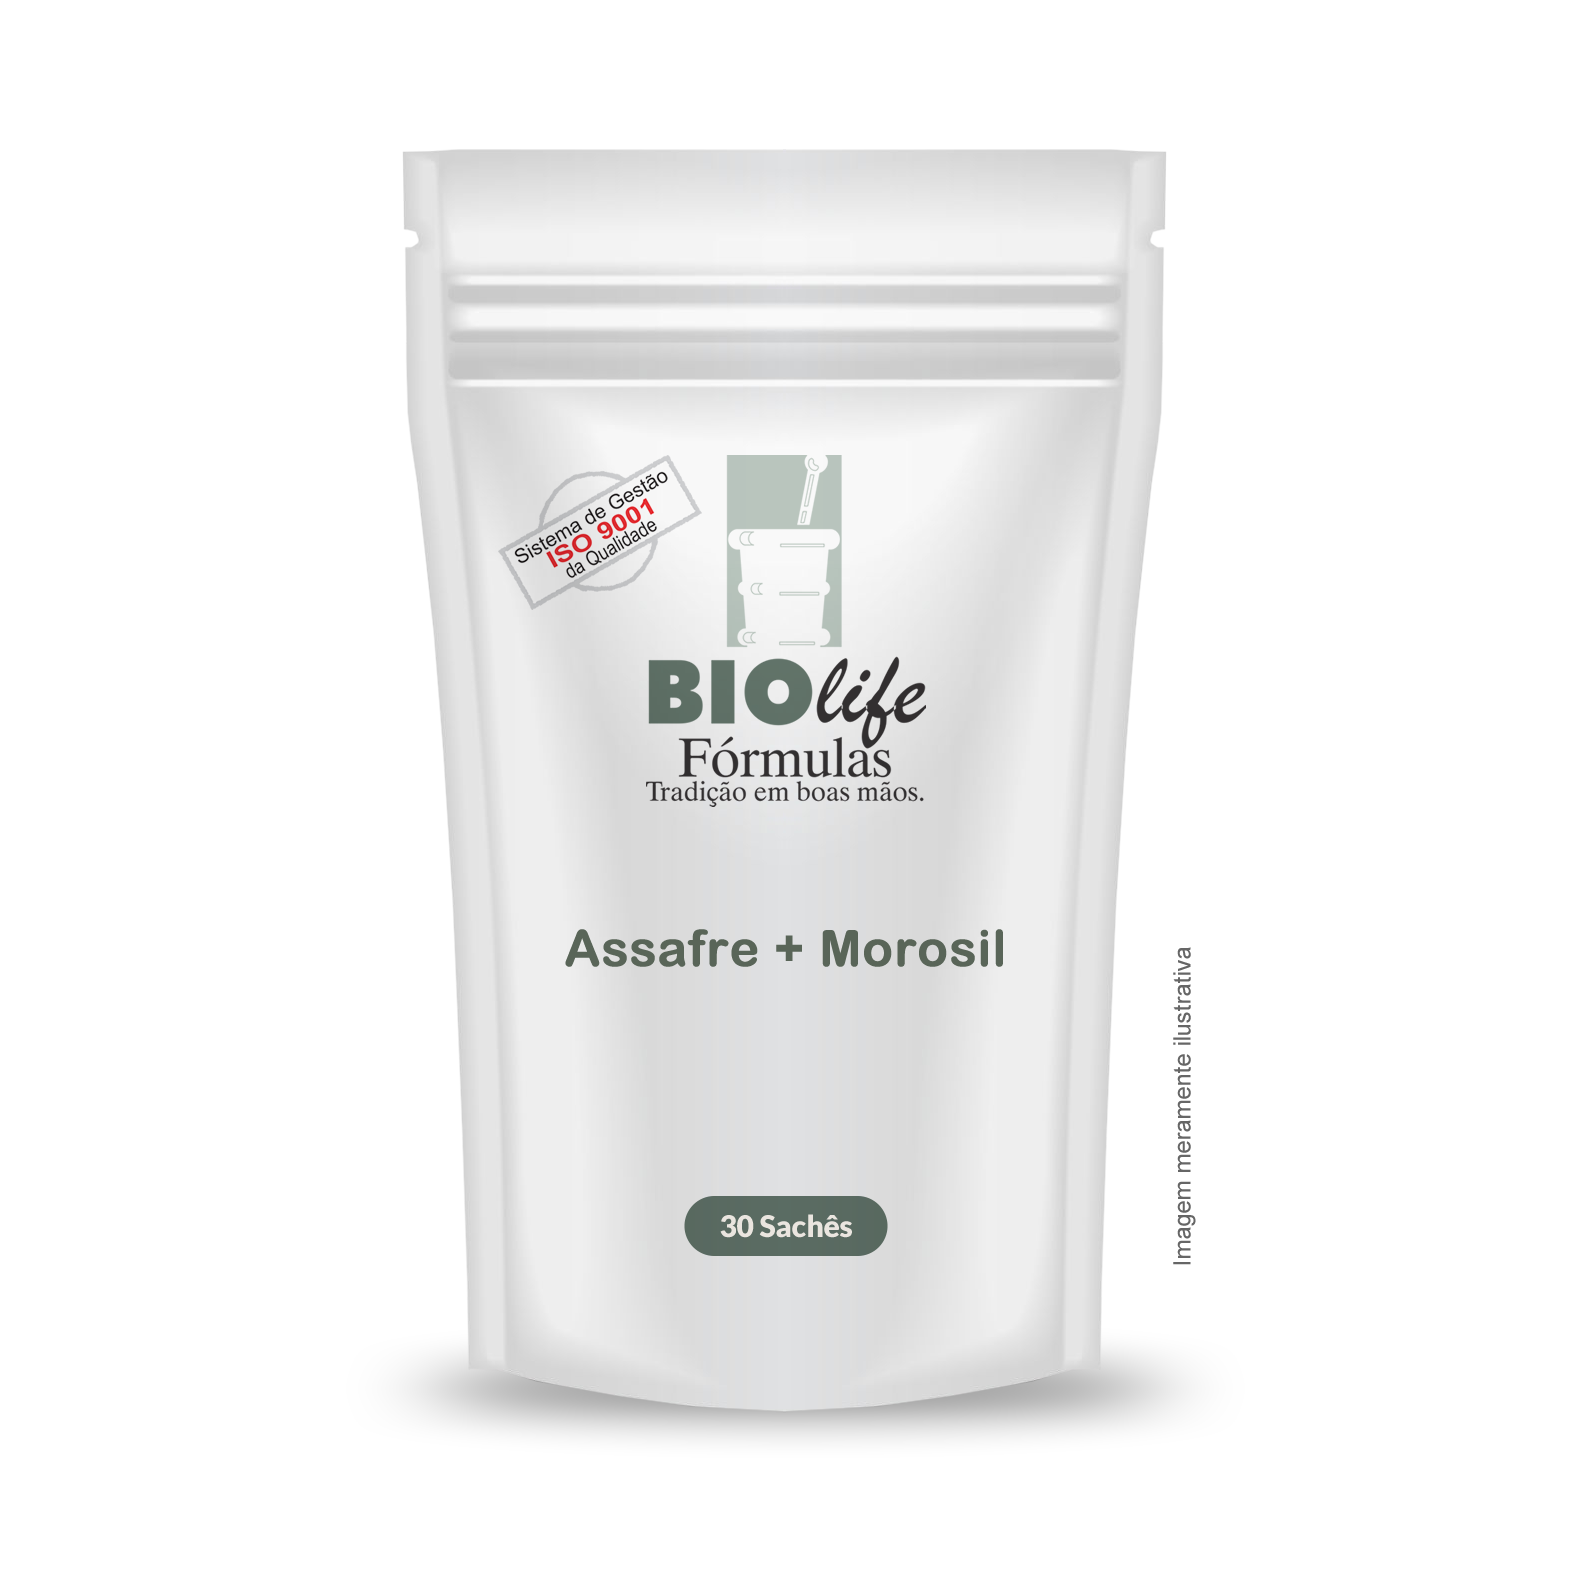 Assafre 100mg + Morosil 300mg com 30 sachês - BioLife